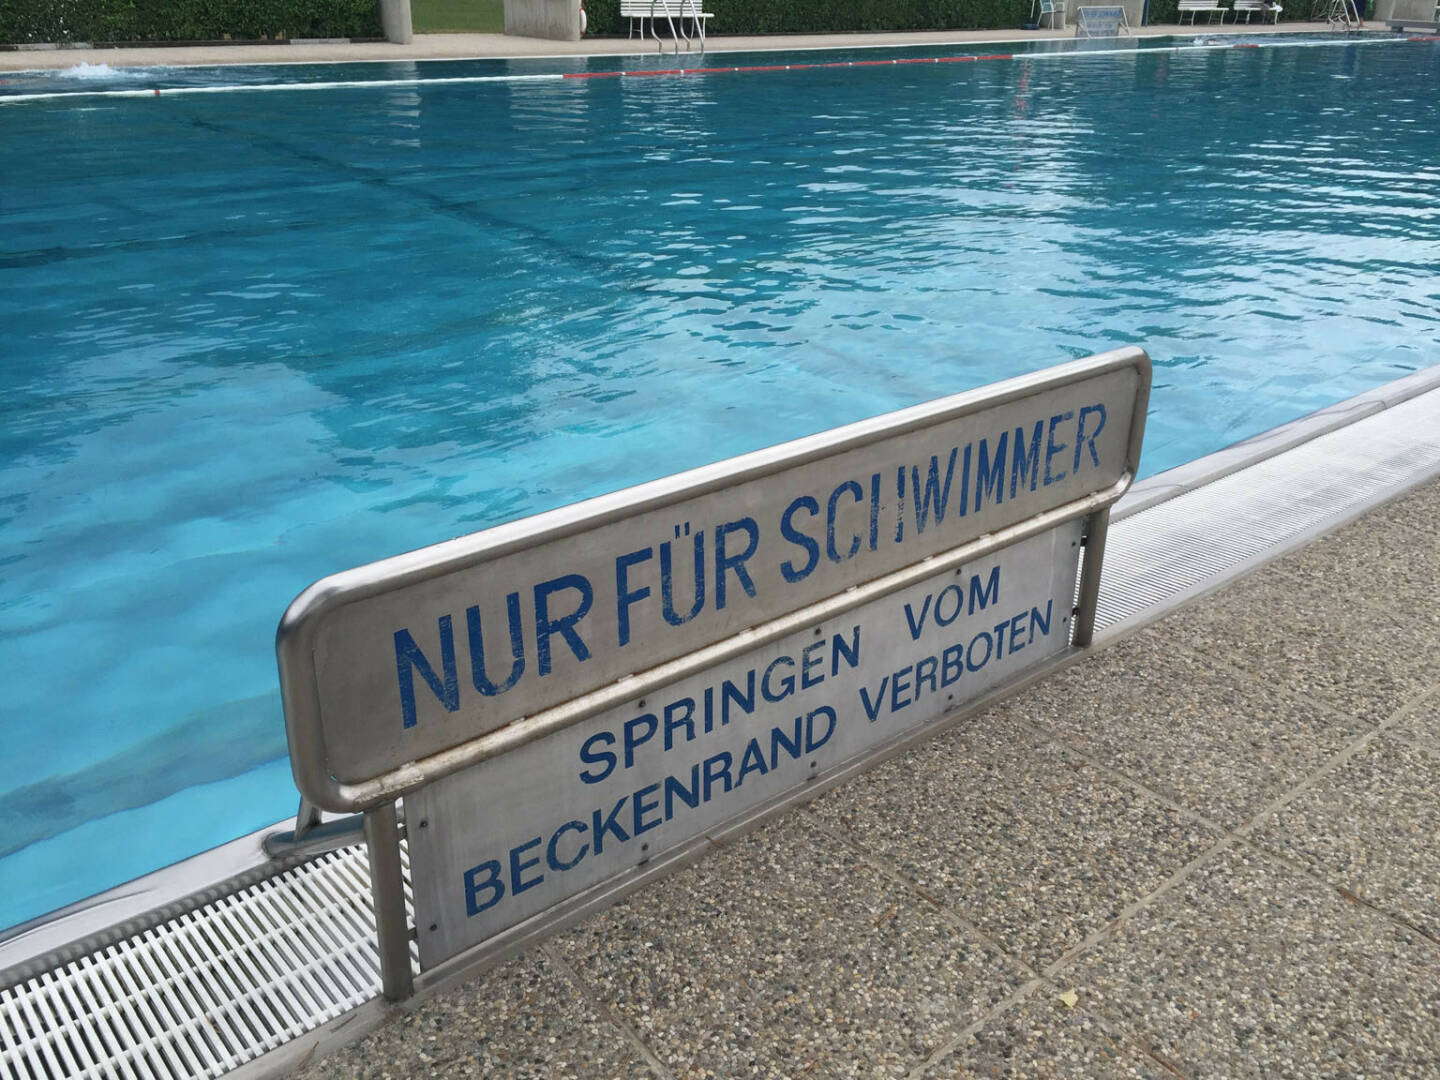 Akademie Bad Wr. Neustadt Nur für Schwimmer - Springen vom Beckenrand verboten